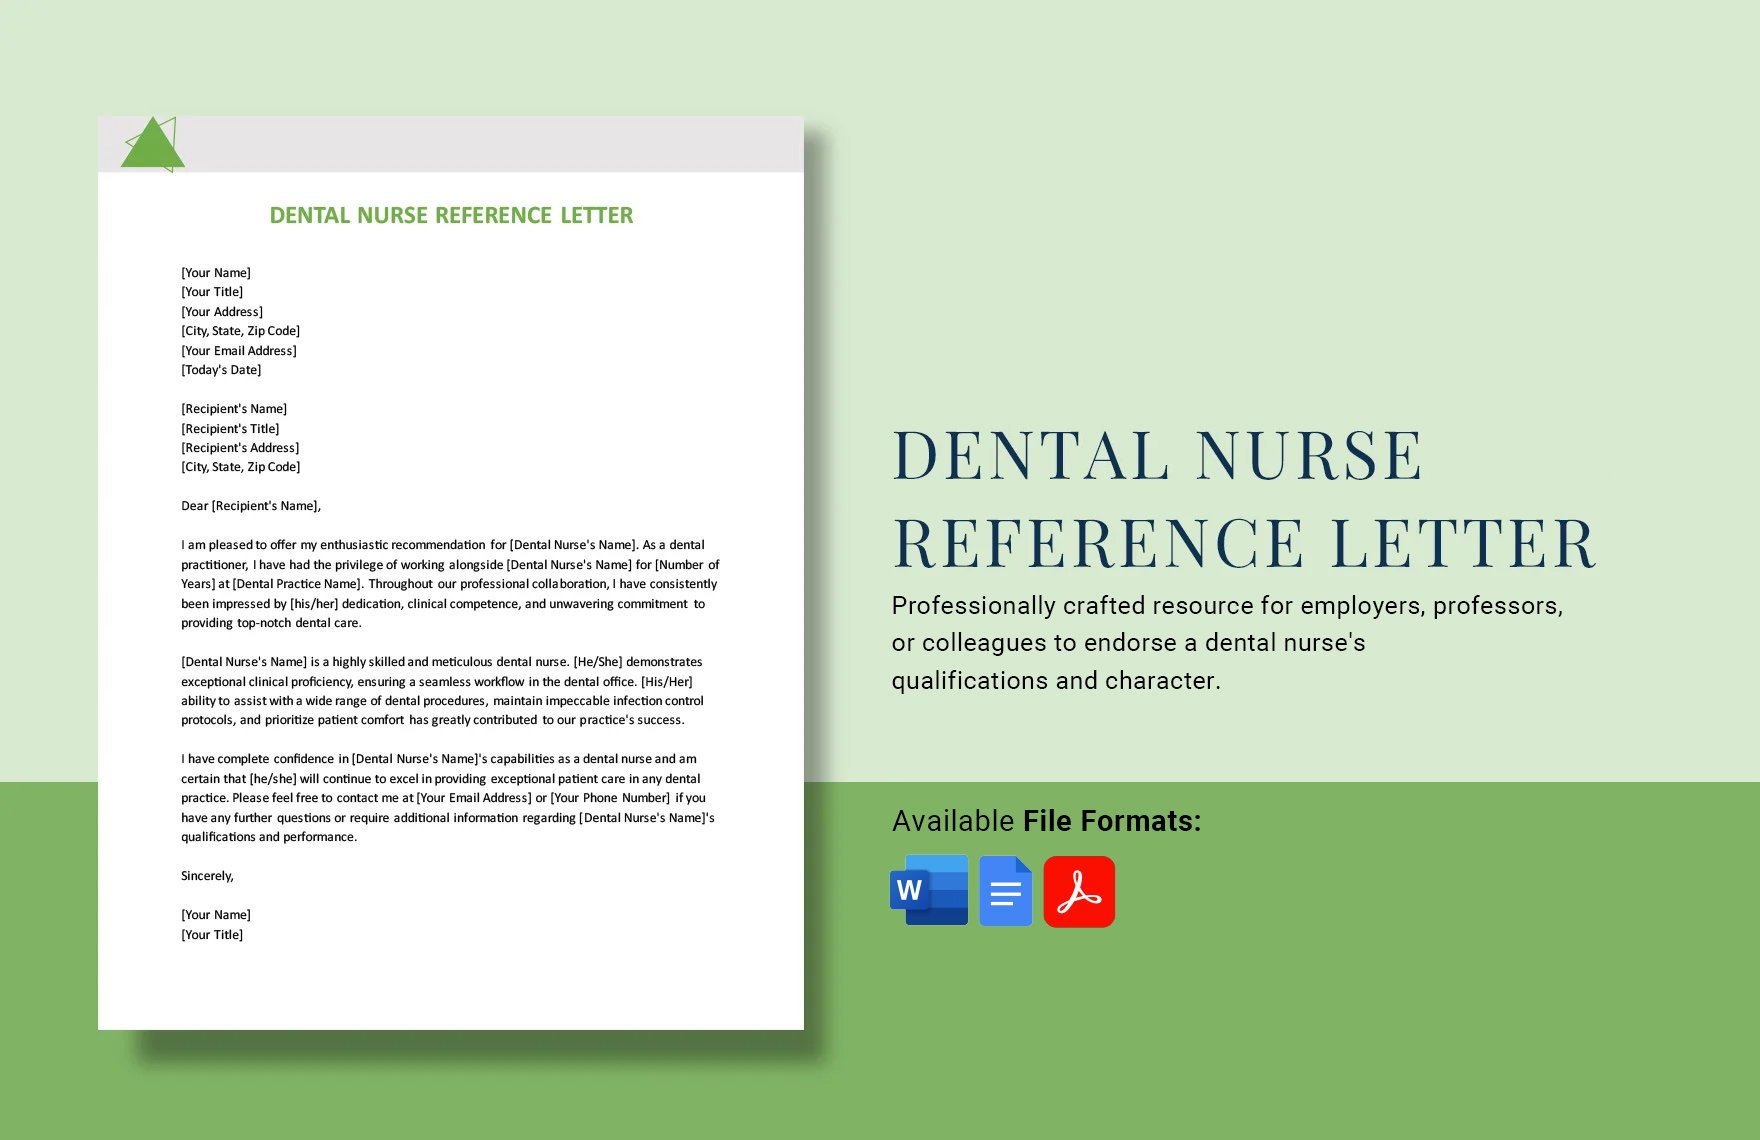 Dental Nurse Reference Letter in Word, Google Docs, PDF